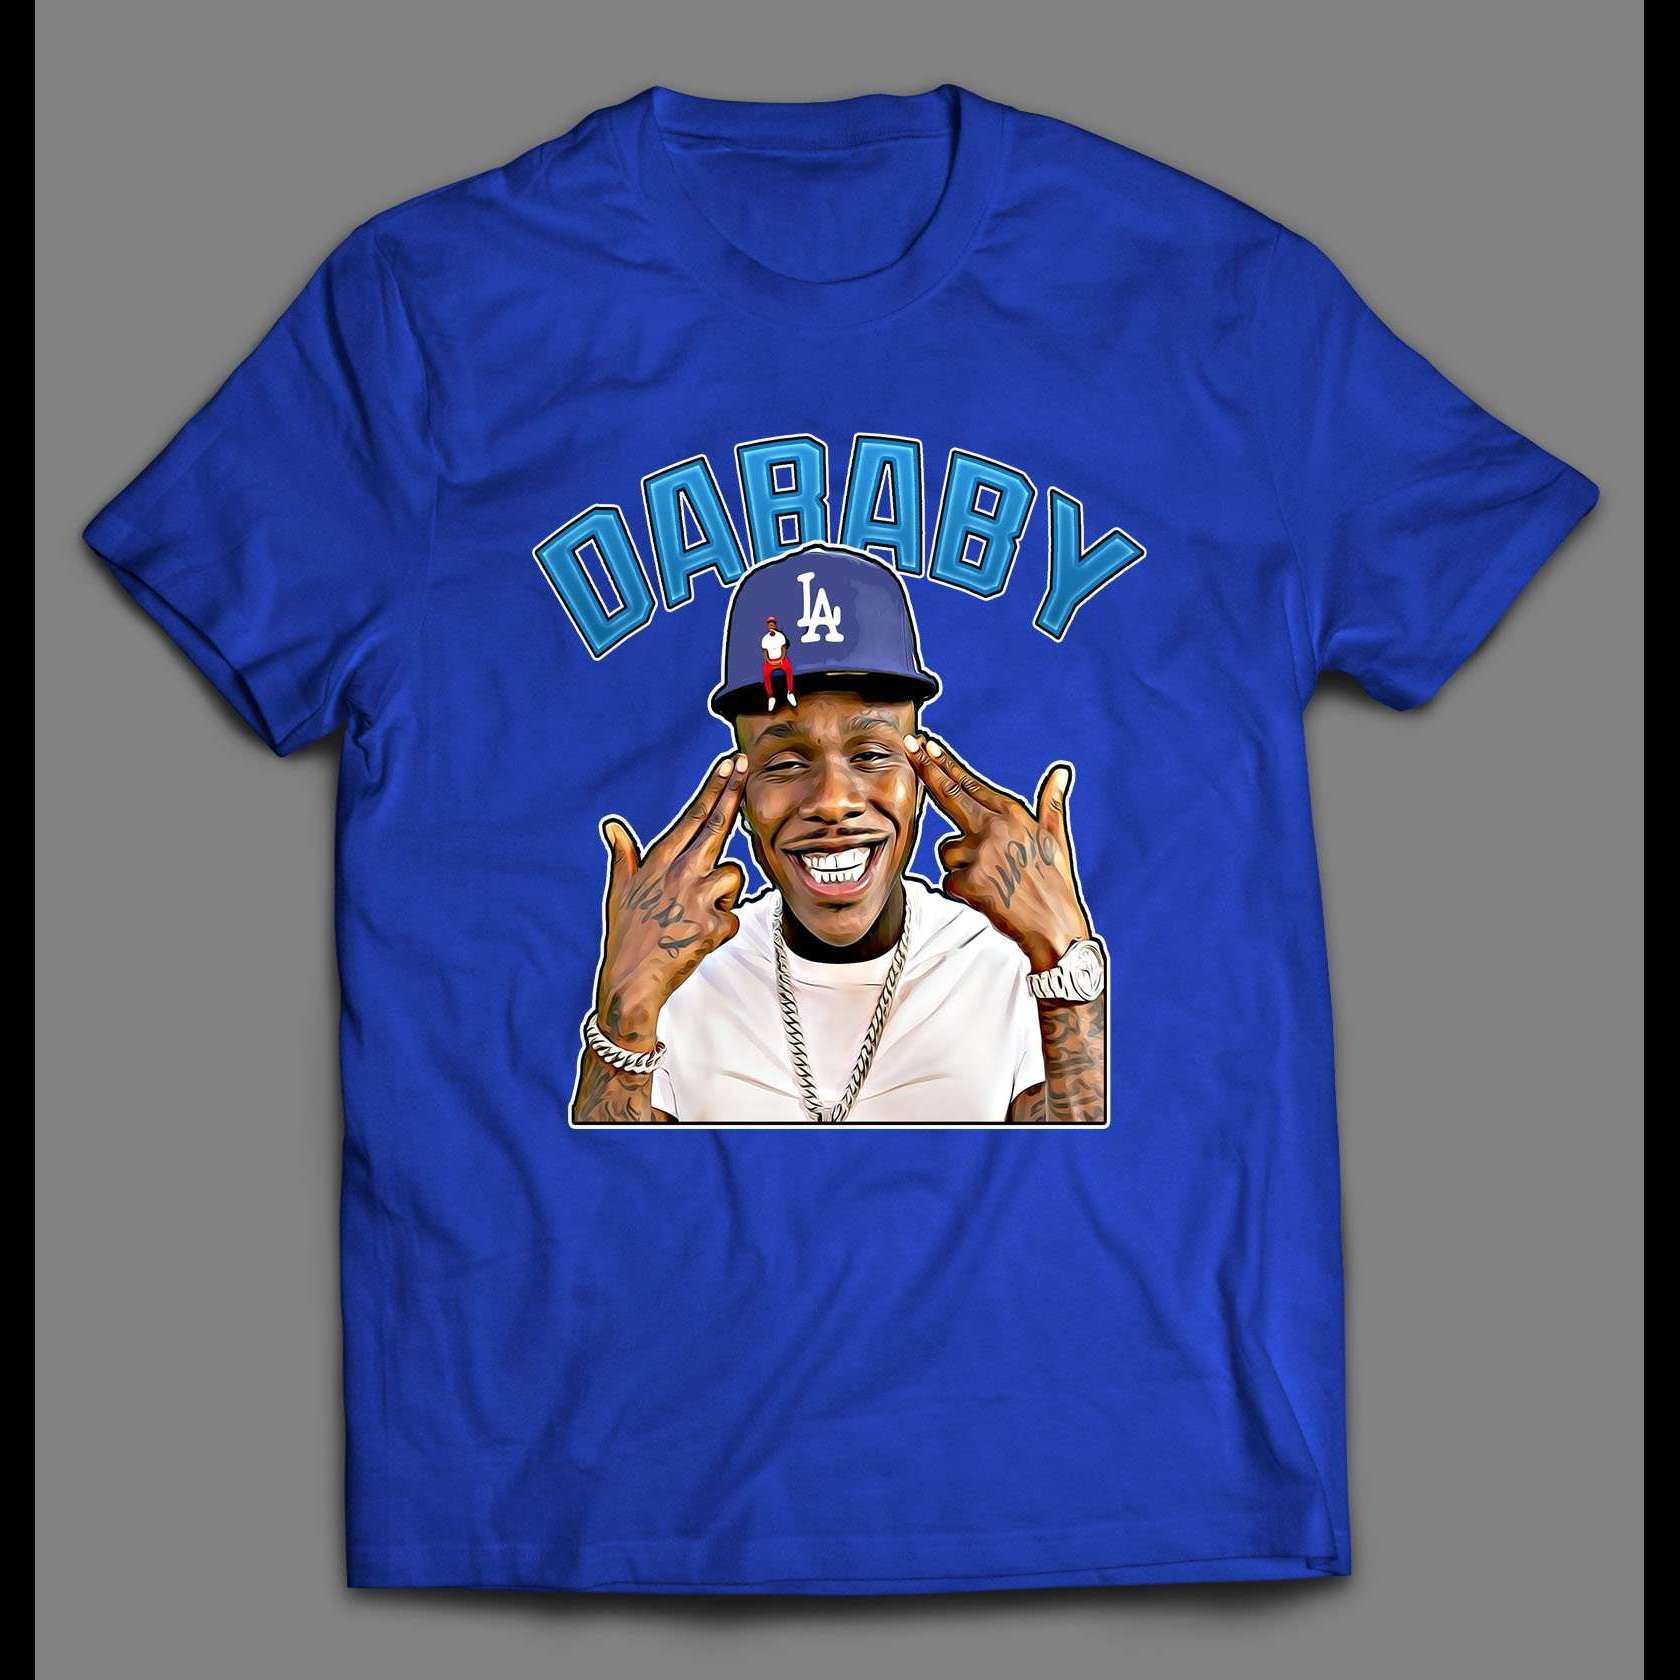 Dababy Unisex Shirt Dababy Rap Hip Hop Vintage Retro 